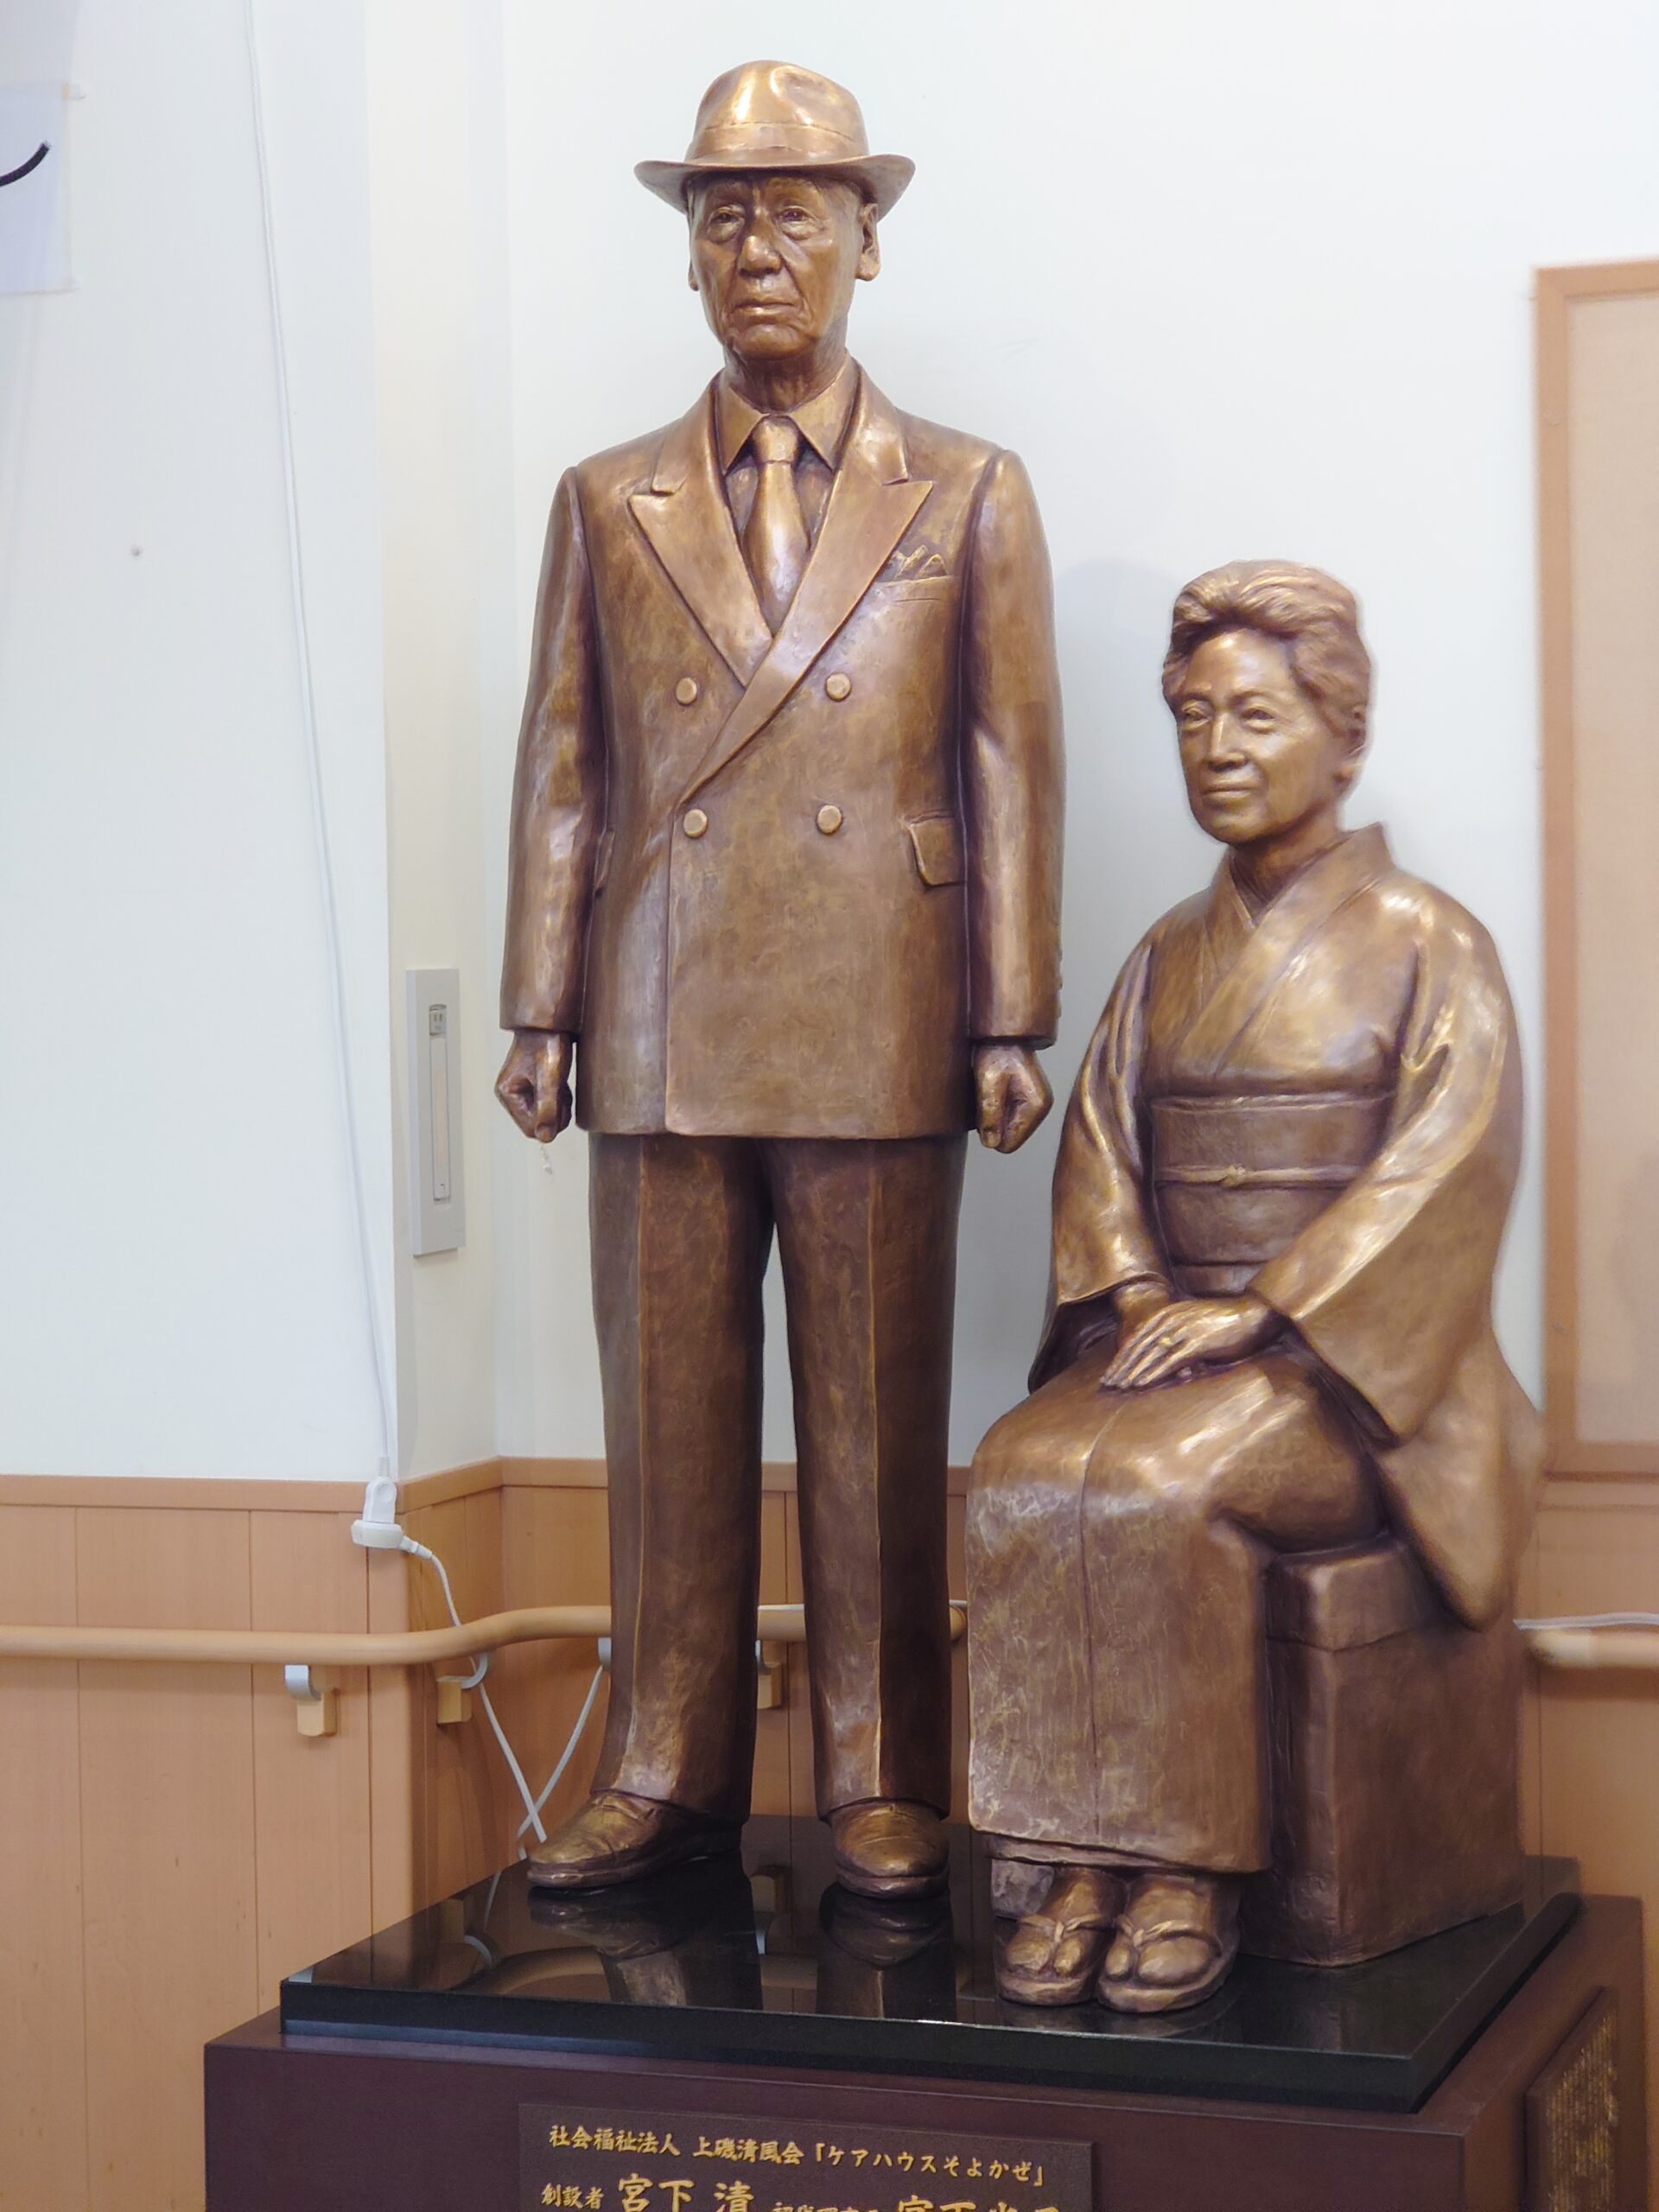 銅像制作／「ケアハウスそよかぜ」の創設者夫婦銅像を建立【北海道北斗市】